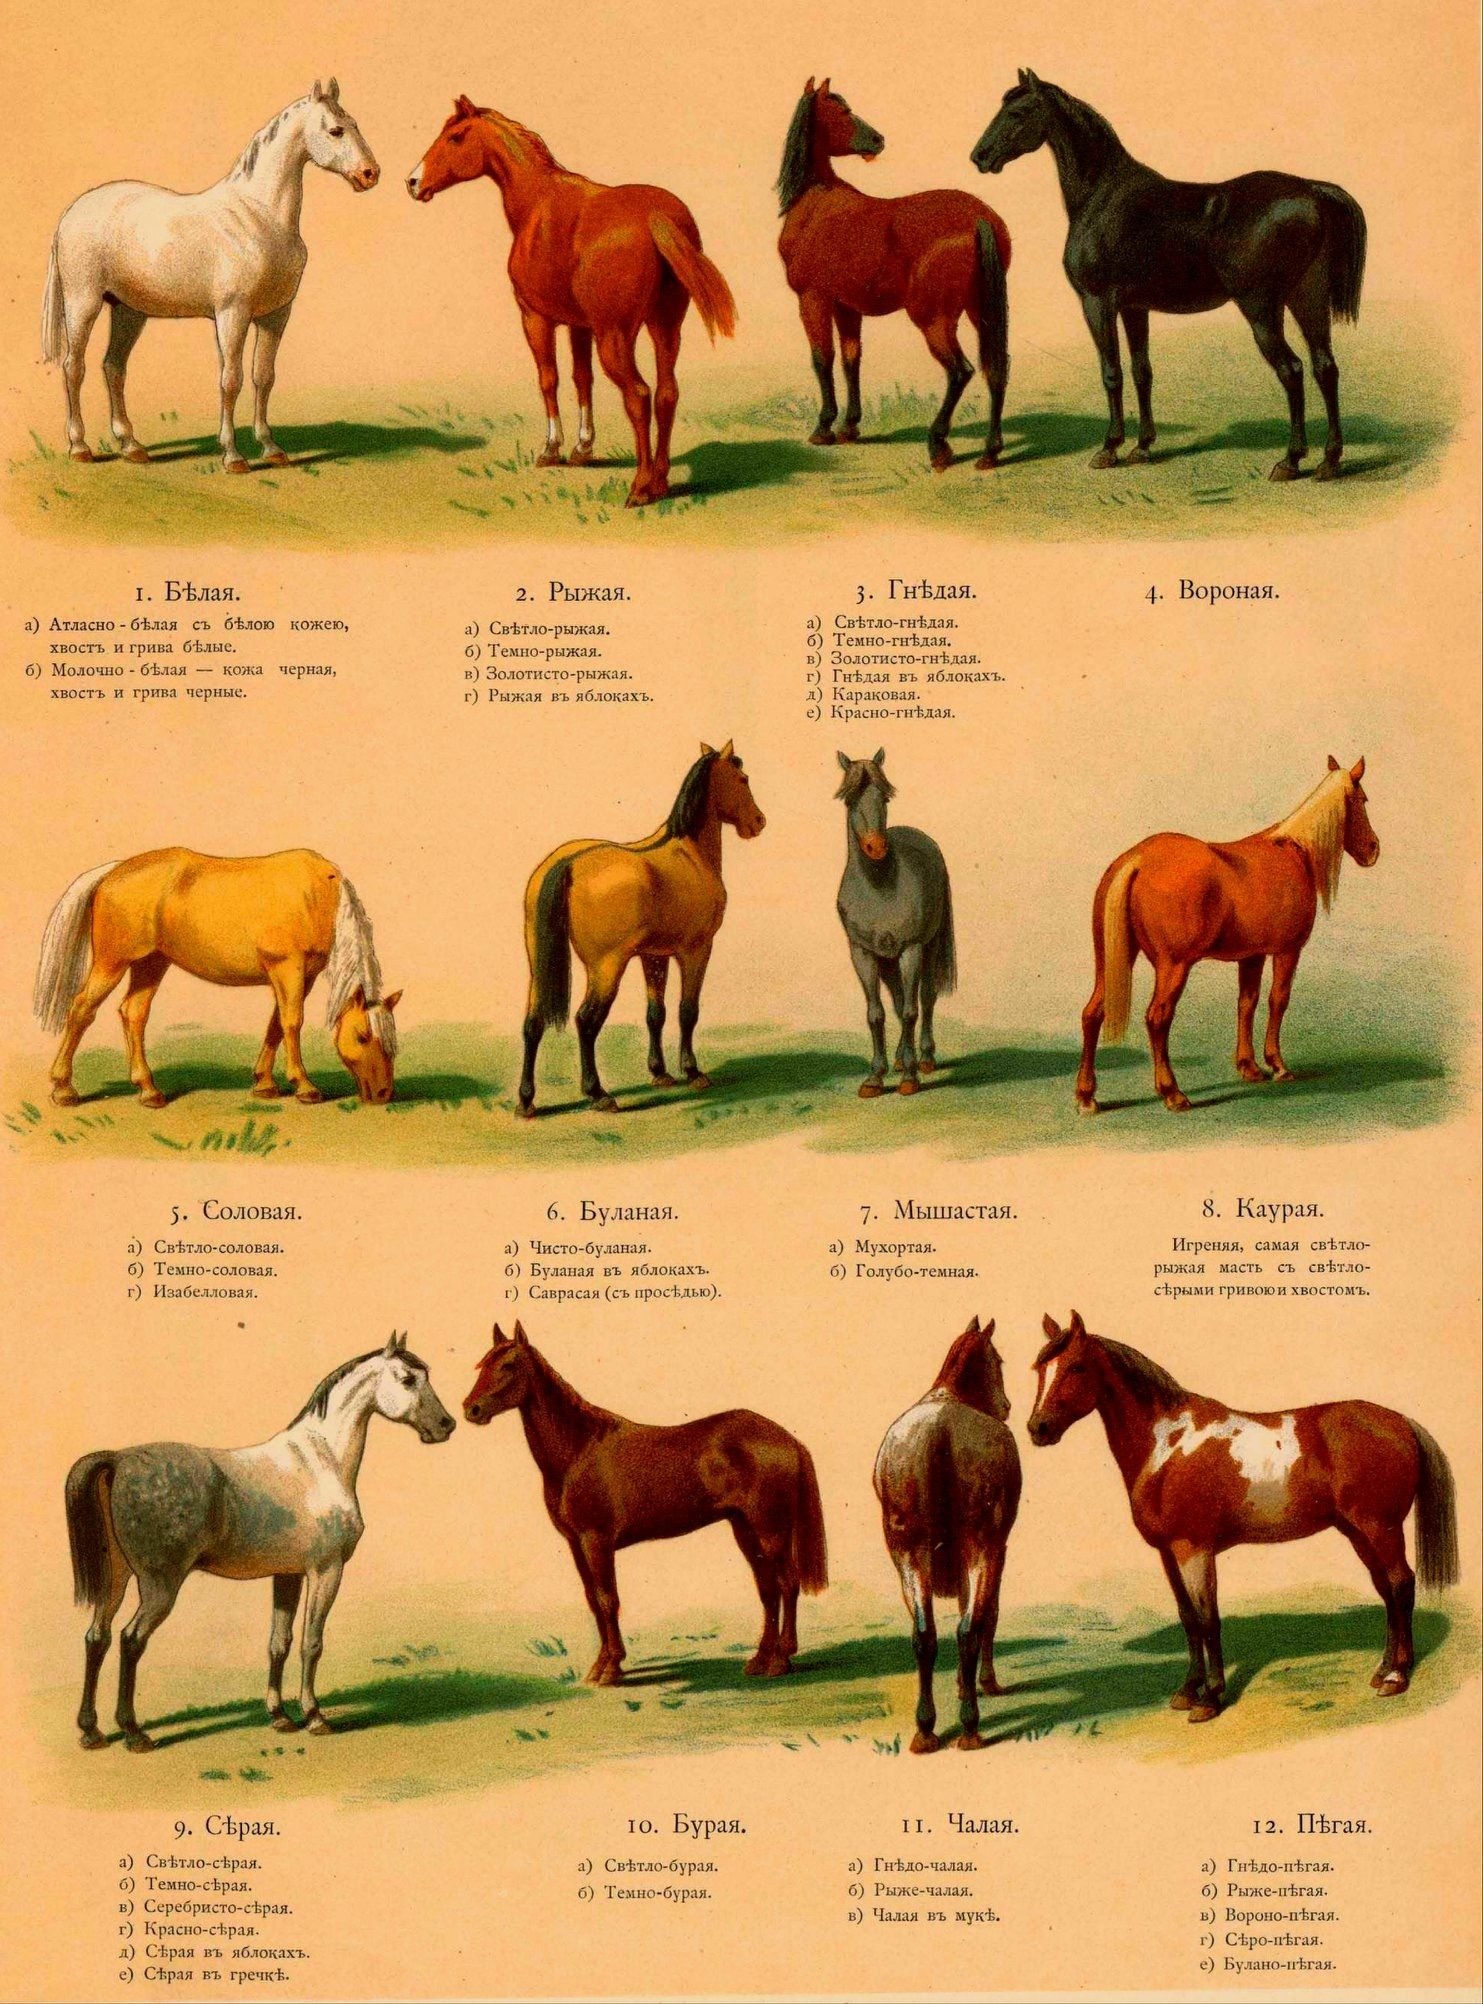 Какие названия у лошадей. Иппологический атлас для наглядного изучения верховой лошади. Каурая масть лошади. «Каурка» - масть лошади рыжеватого цвета.. Каурая масть лошади цвет.